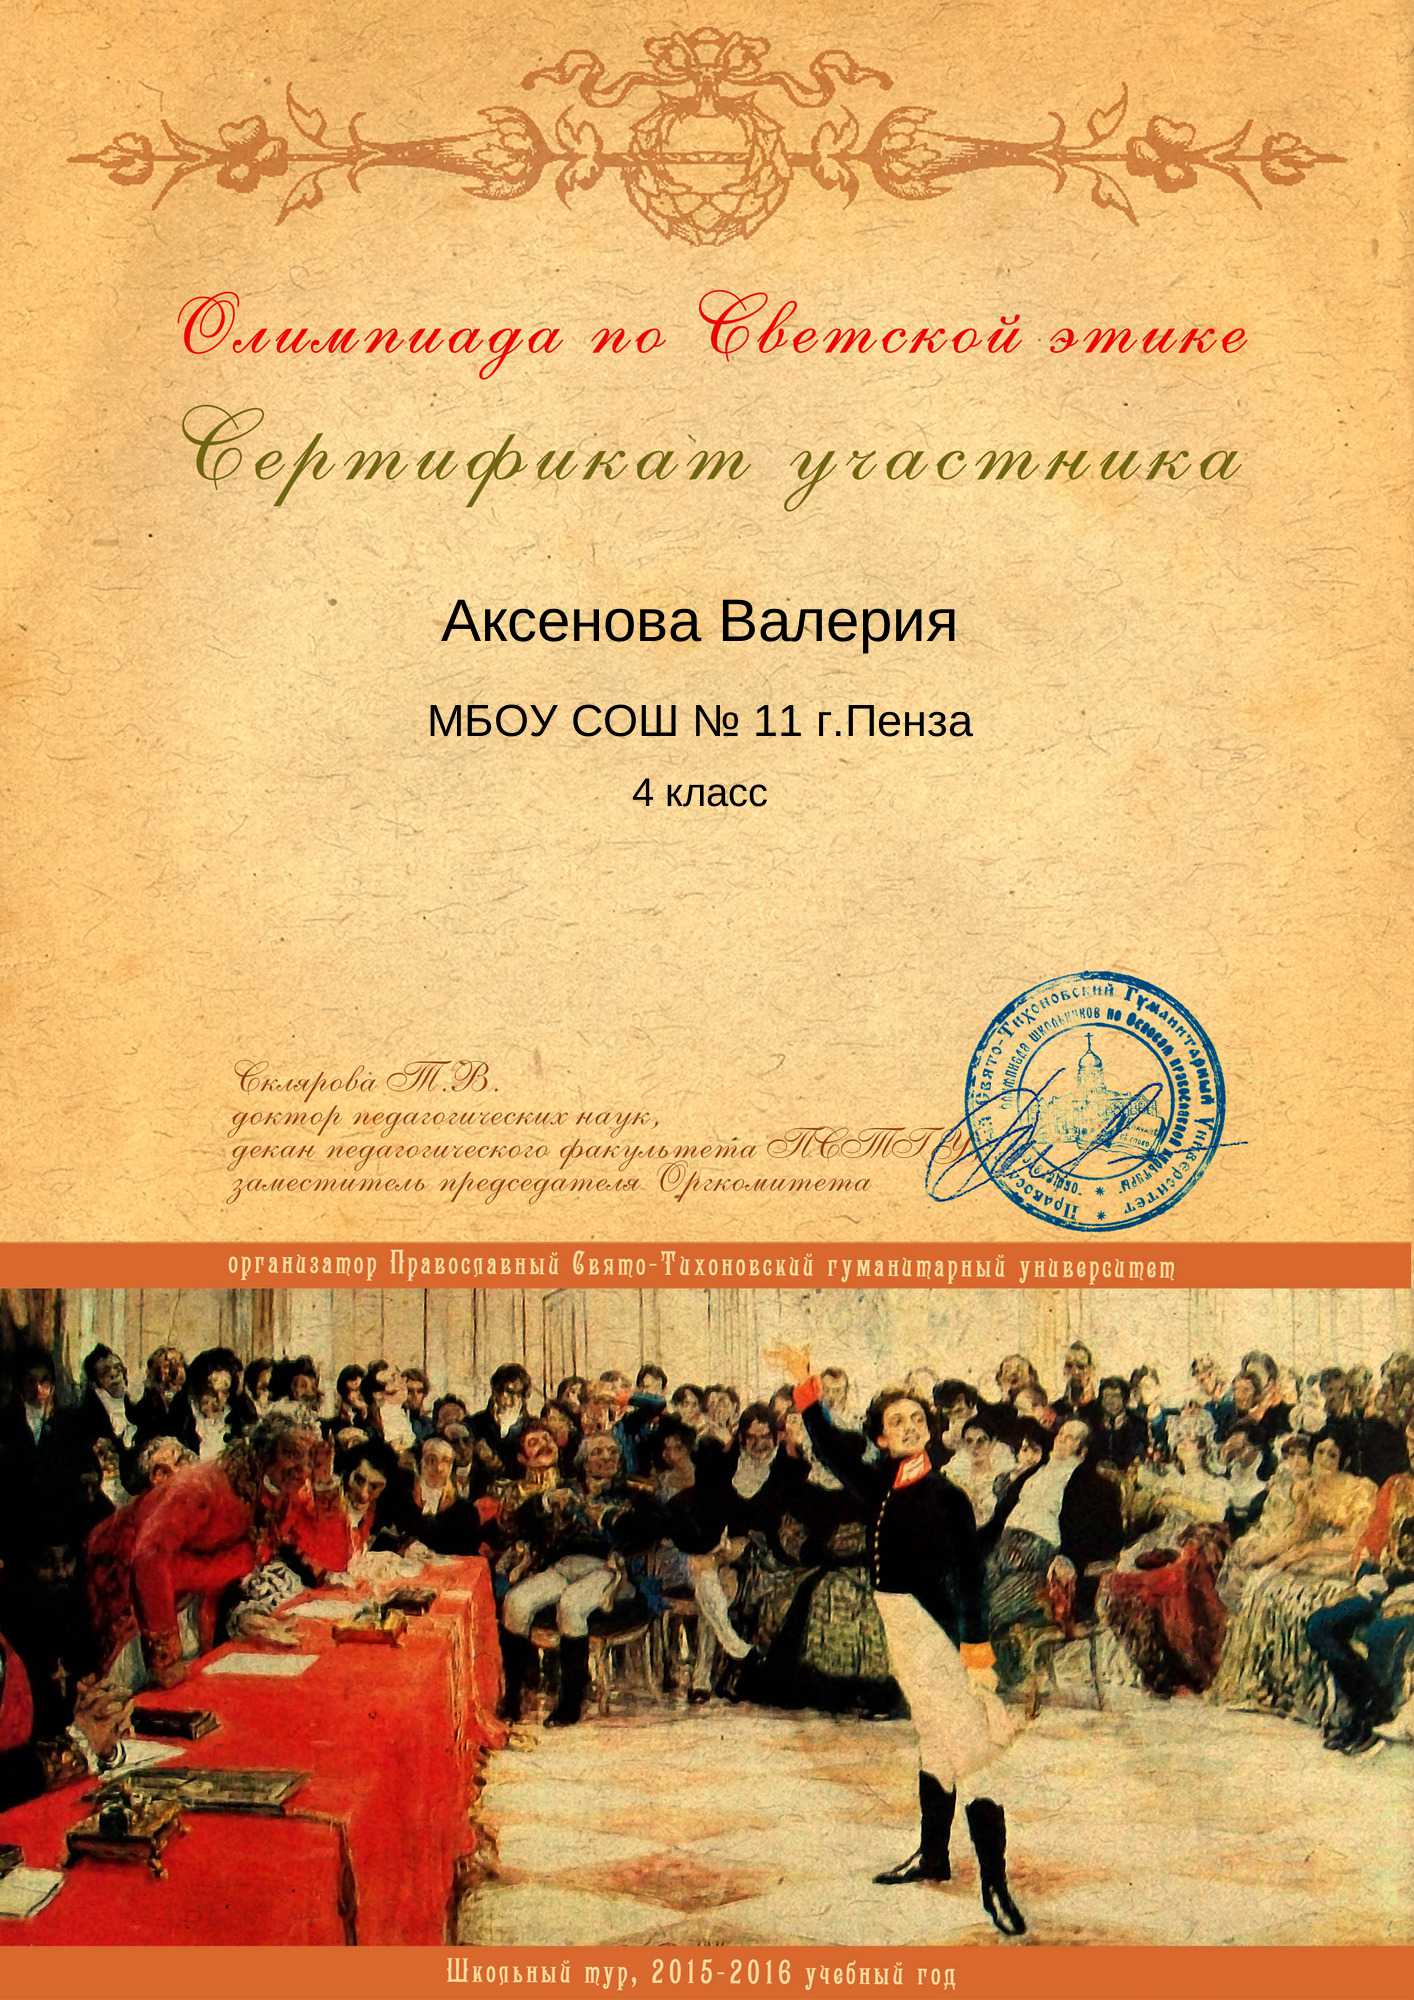 Аксенова Валерия_сертификат участника_